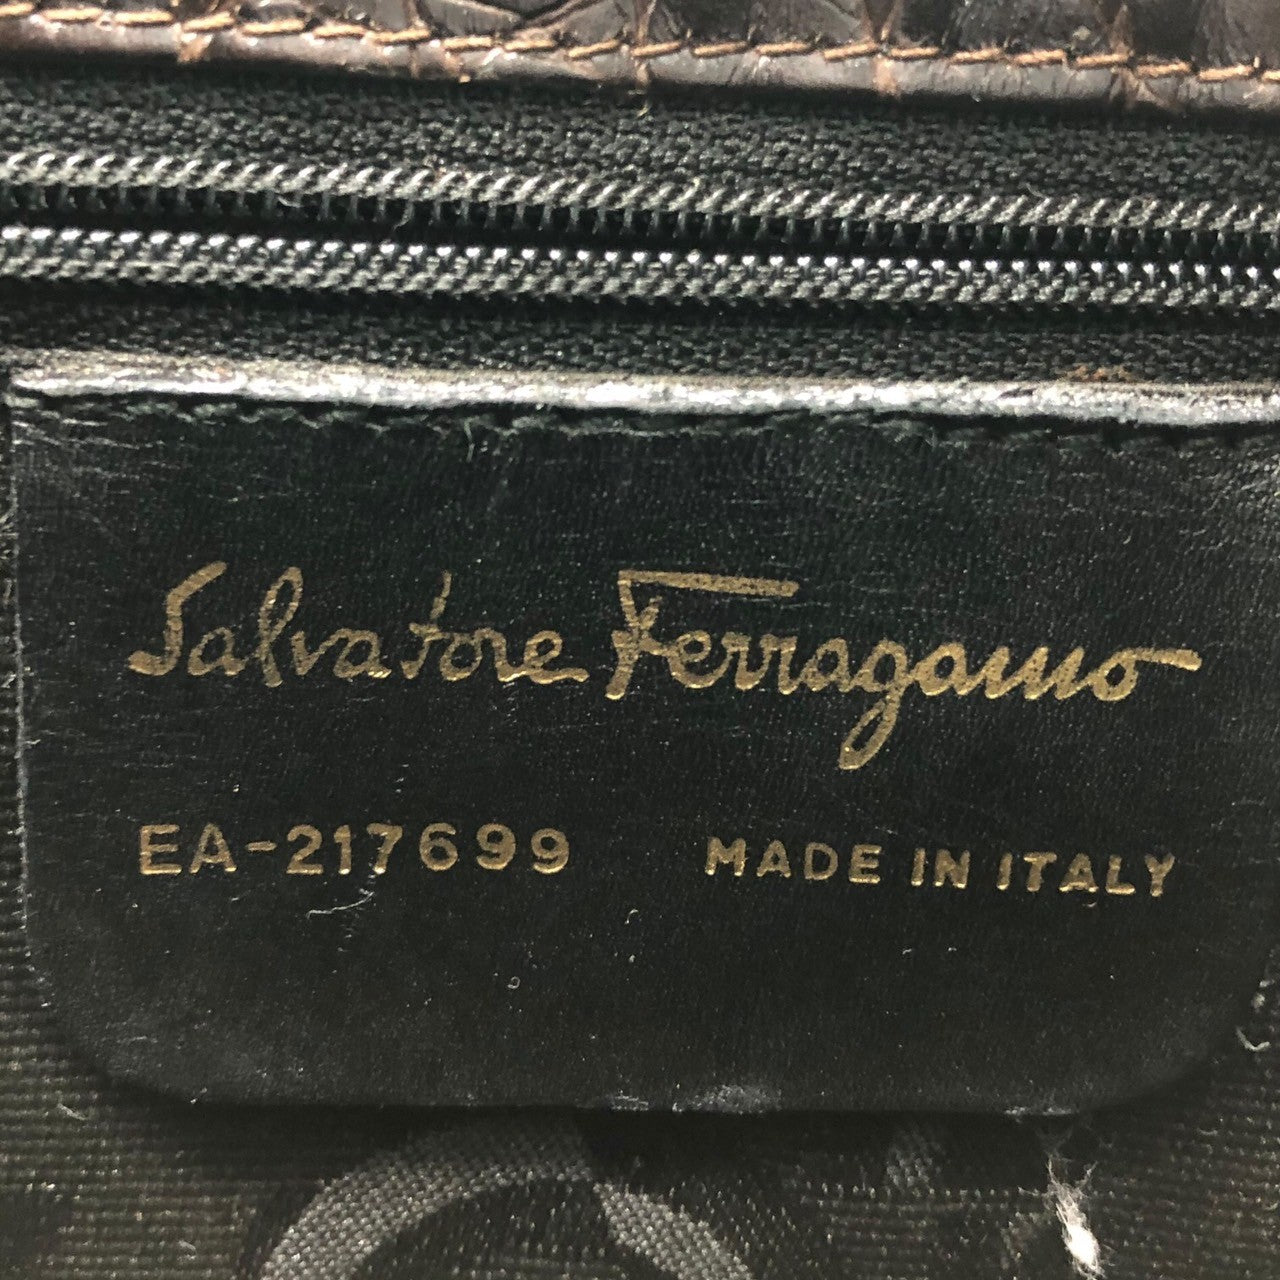 Salvatore Ferragamo(サルヴァトーレフェラガモ) ガンチーニ クロコ 型押し スウェード レザー トート バッグ ハンド EA-217699 ブラウン ヴィンテージ OLD